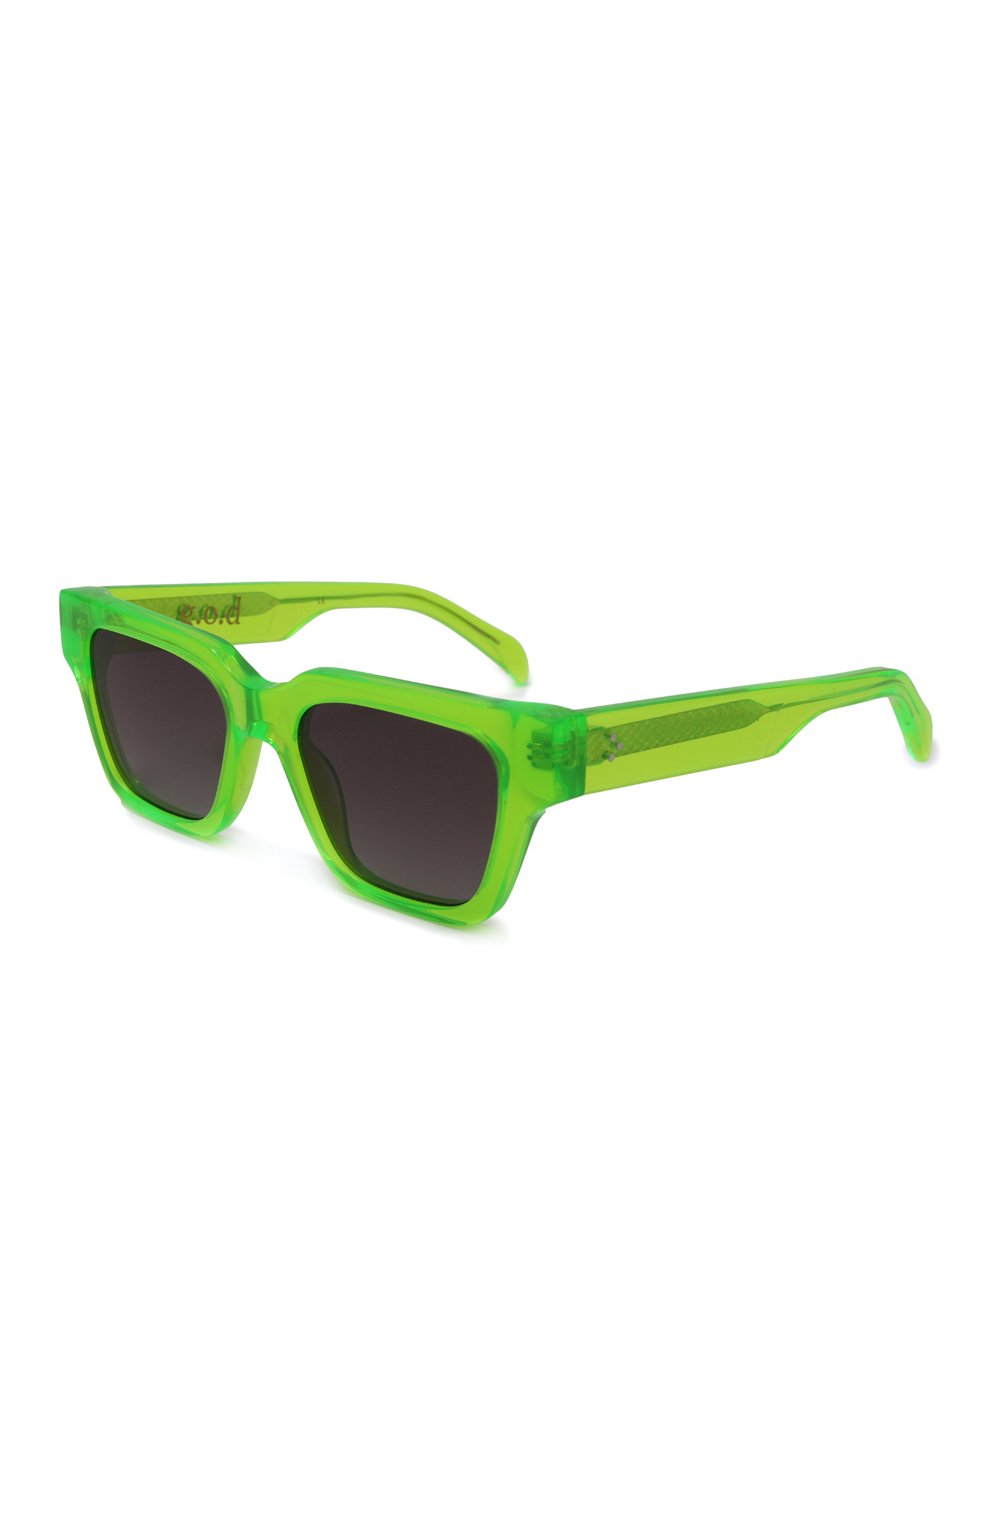 Очки G.O.D. eyewear, Солнцезащитные очки G.O.D. eyewear, Китай, Зелёный, Оправа-ацетат; Линзы-поликарбонат;, 13181981  - купить